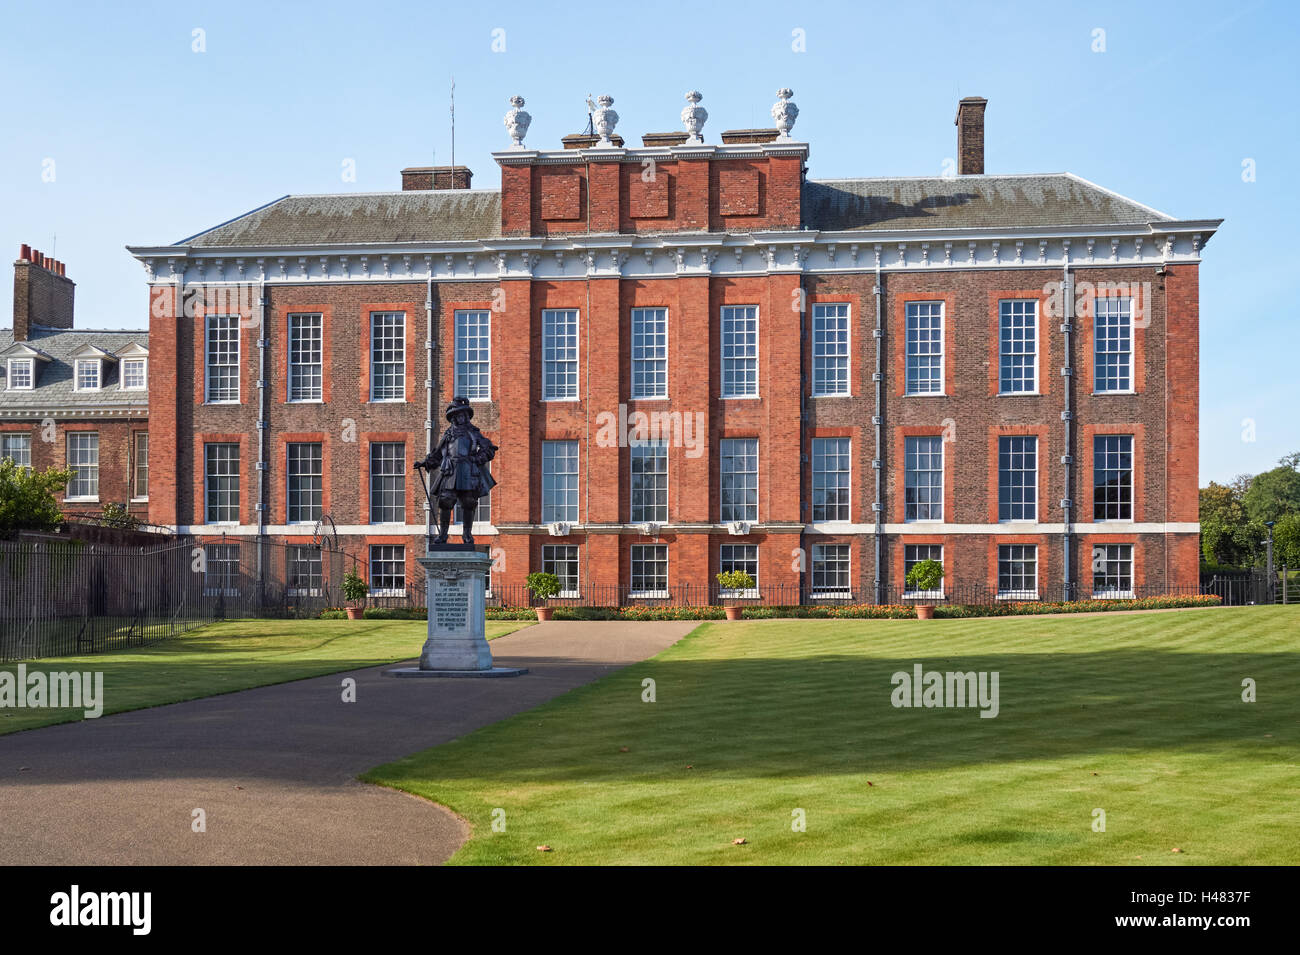 Le palais de Kensington à Londres Angleterre Royaume-Uni UK Banque D'Images